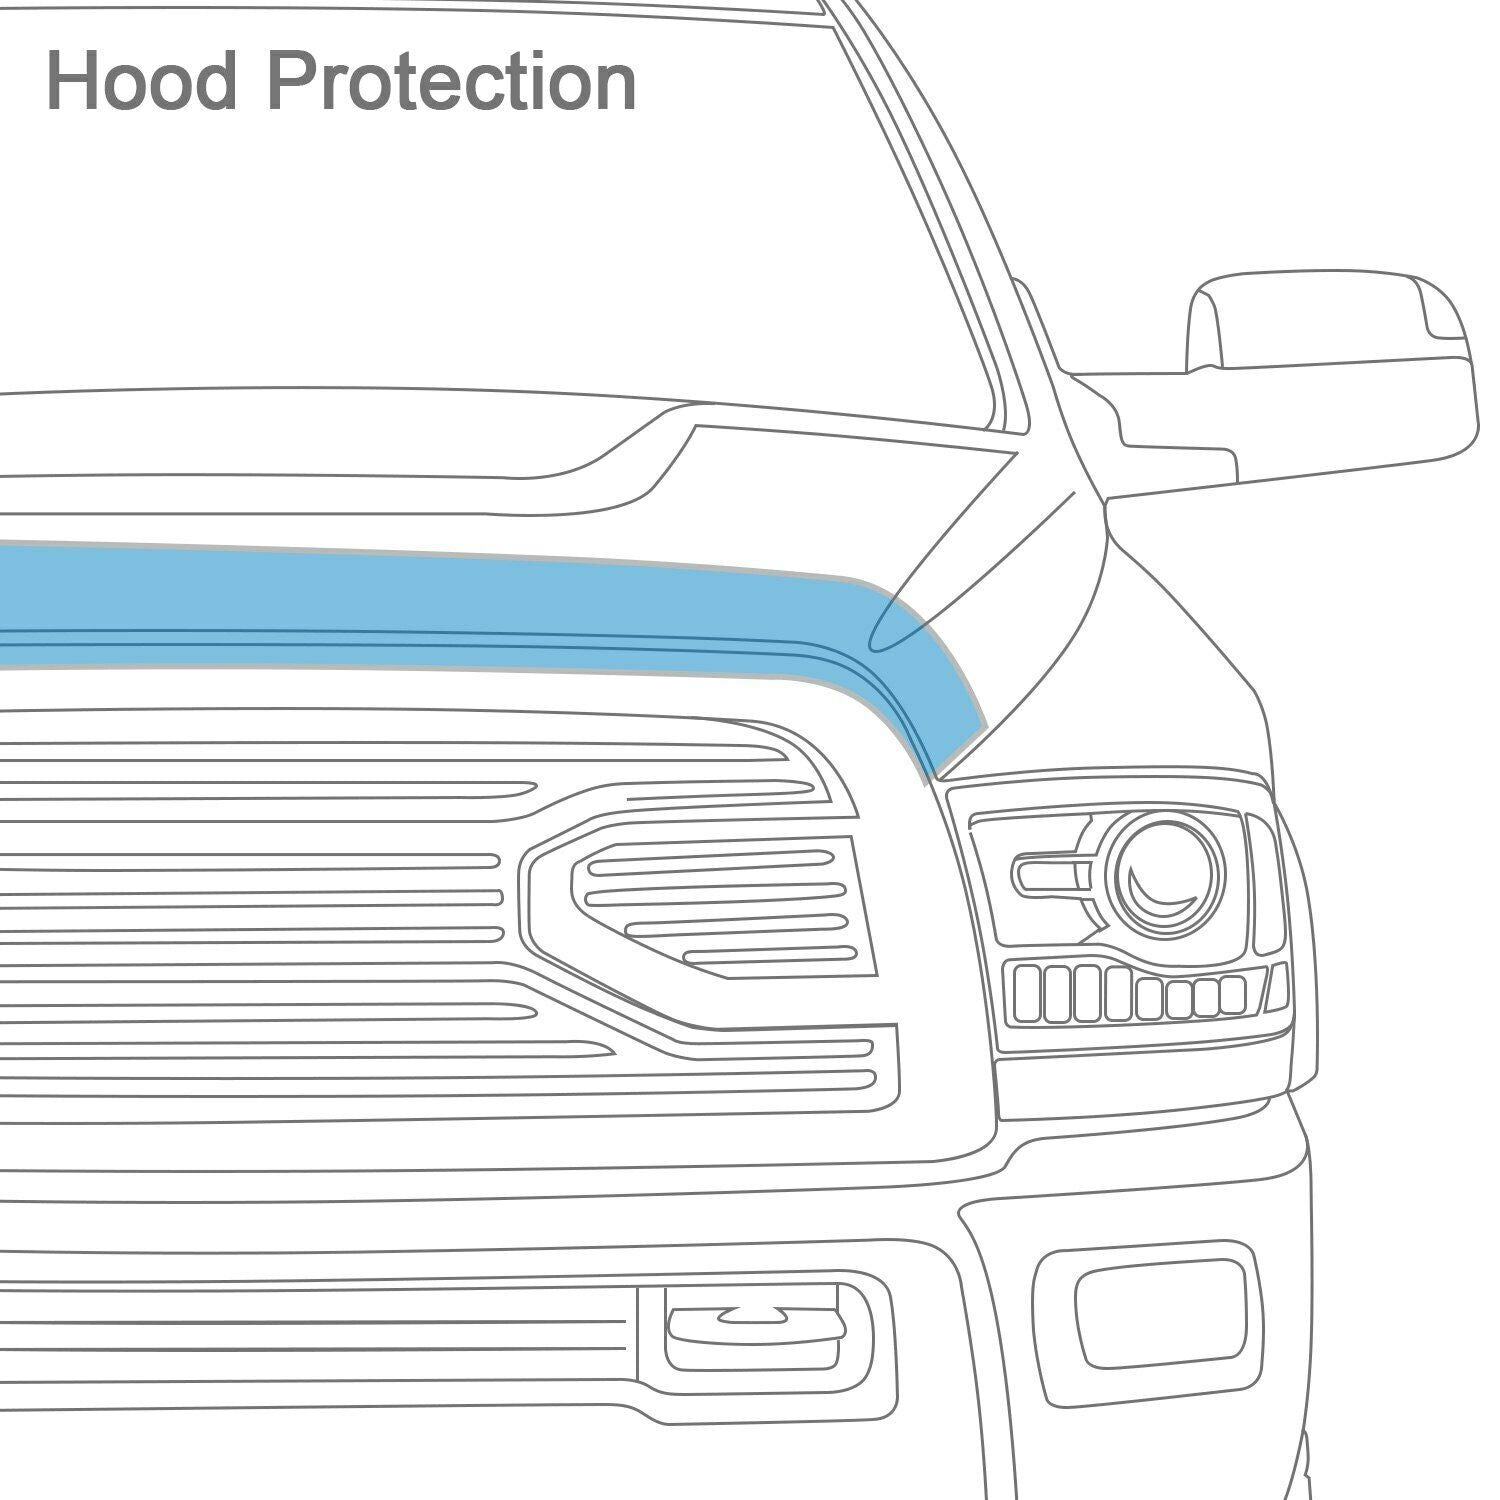 AVS Hoodflector Protector Shield For 06 Chevy Silverado 1500 2500HD 3500 - 21154